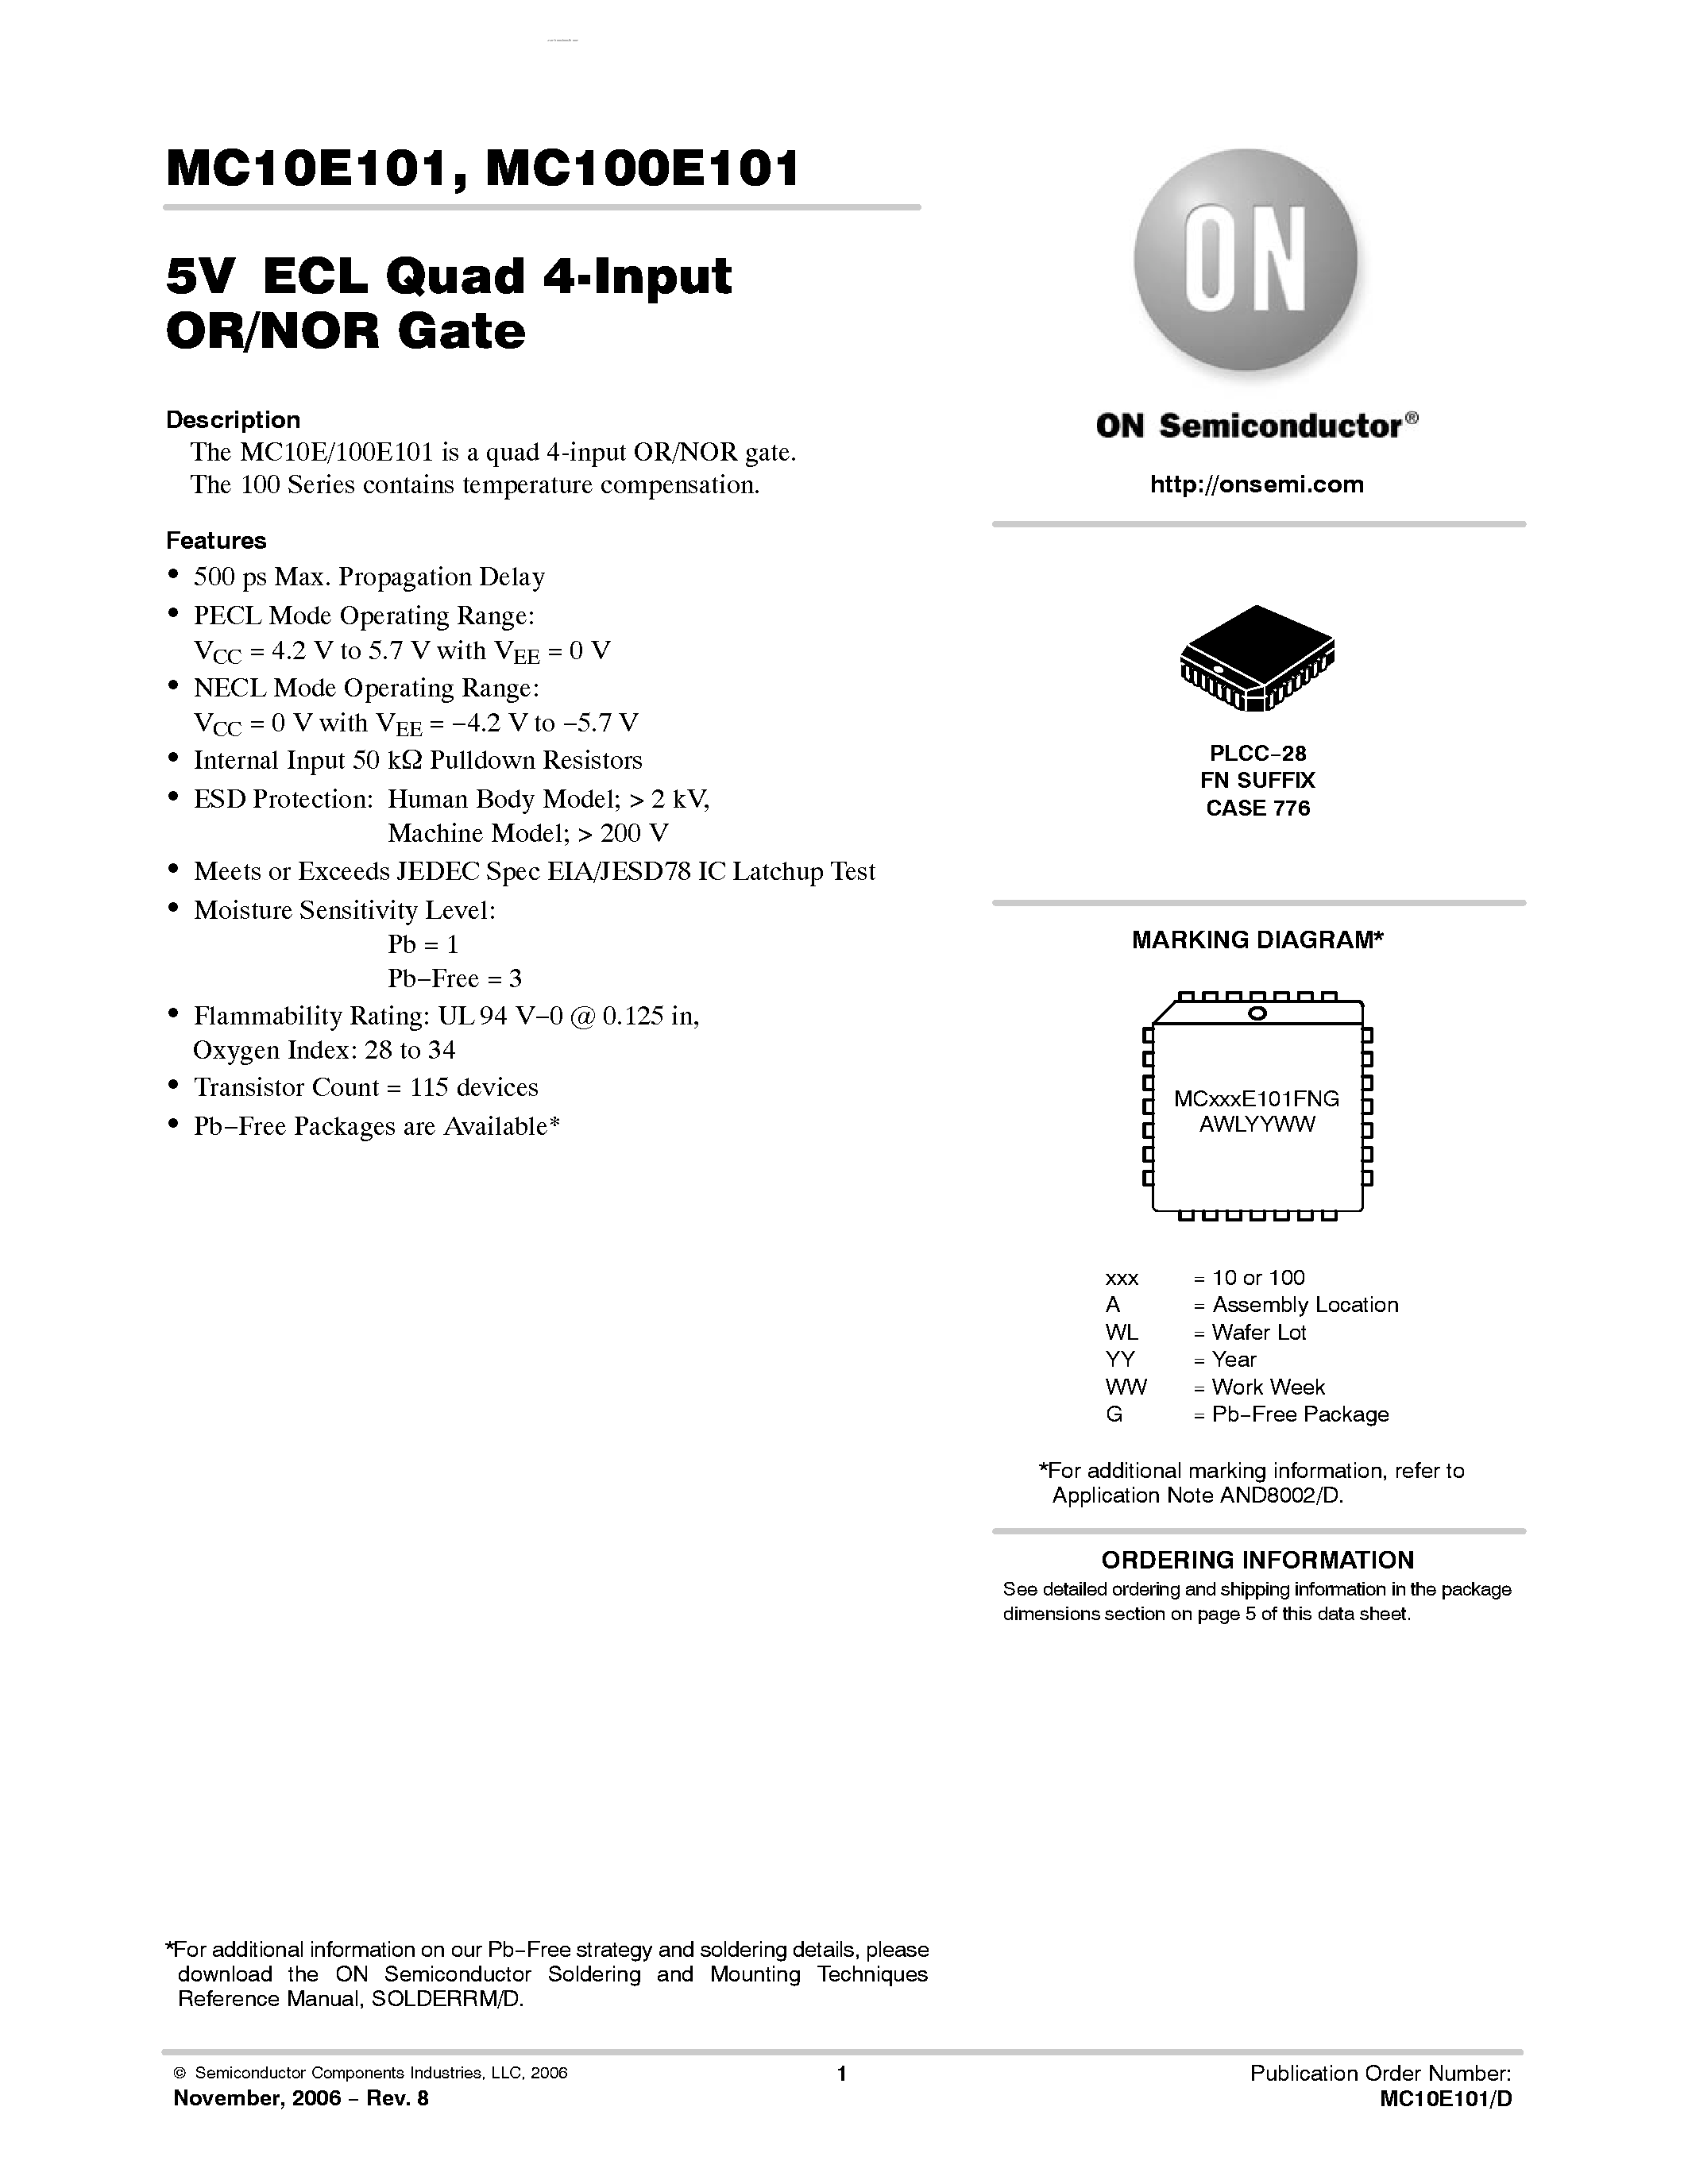 Datasheet MC100E101 - QUAD 4-INPUT OR/NOR GATE page 1